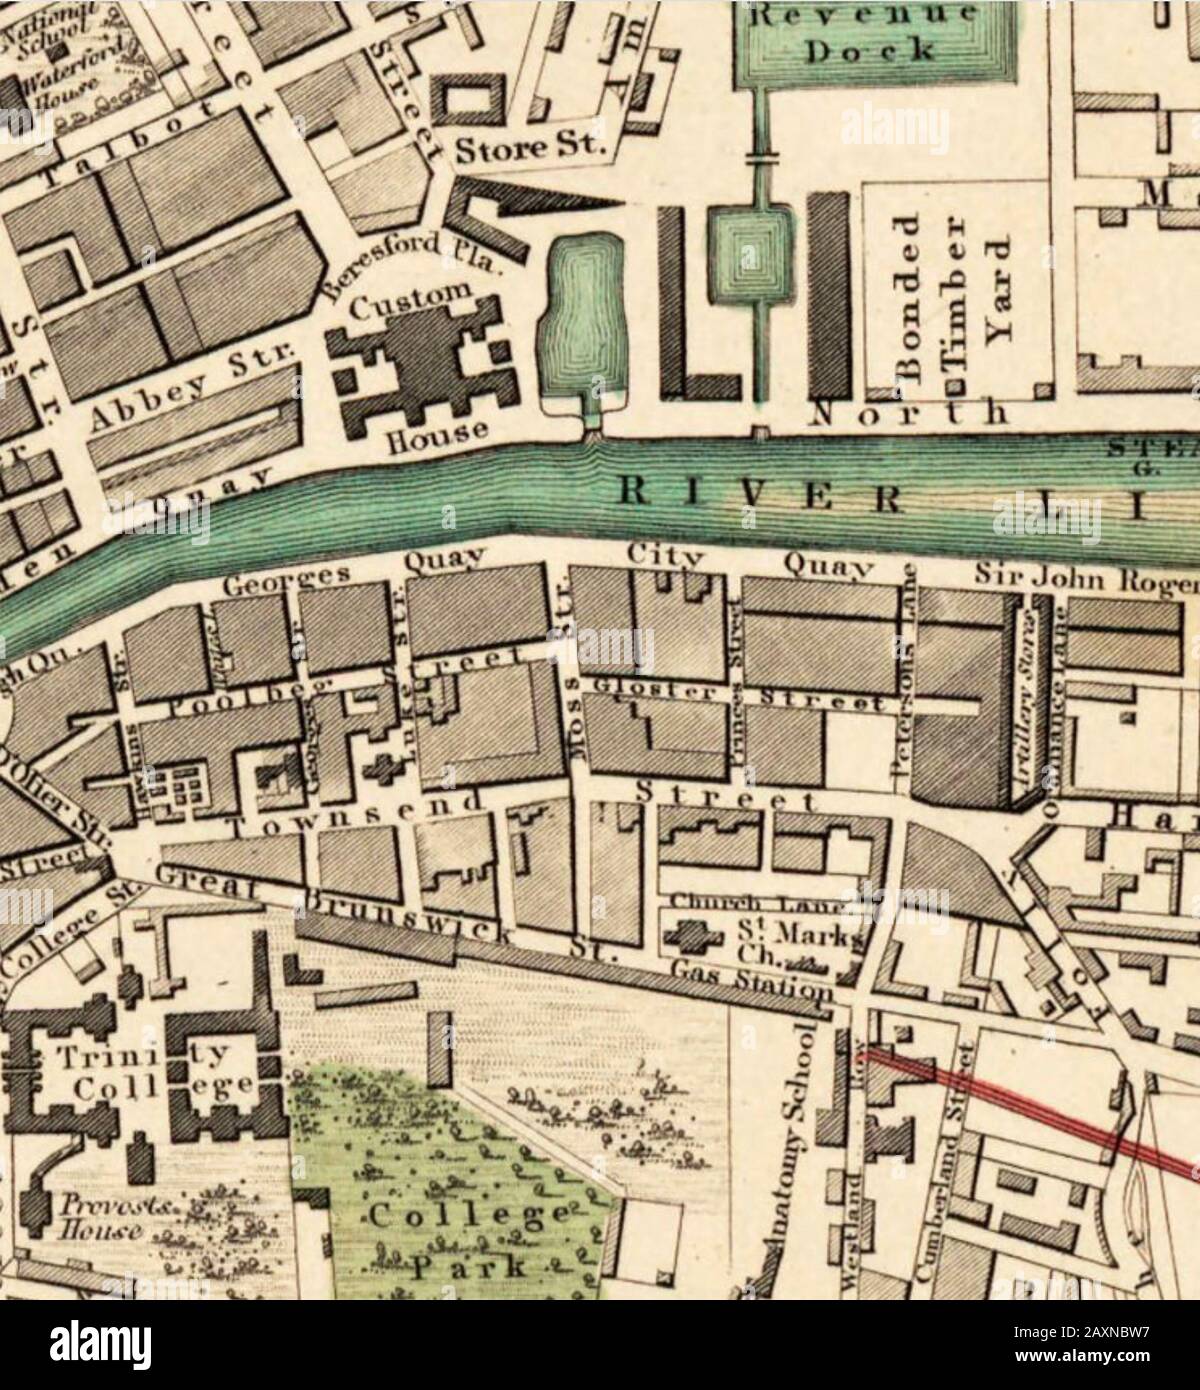 Centre DE DUBLIN sur une carte de 1853 montrant Trinity College en bas à gauche Banque D'Images